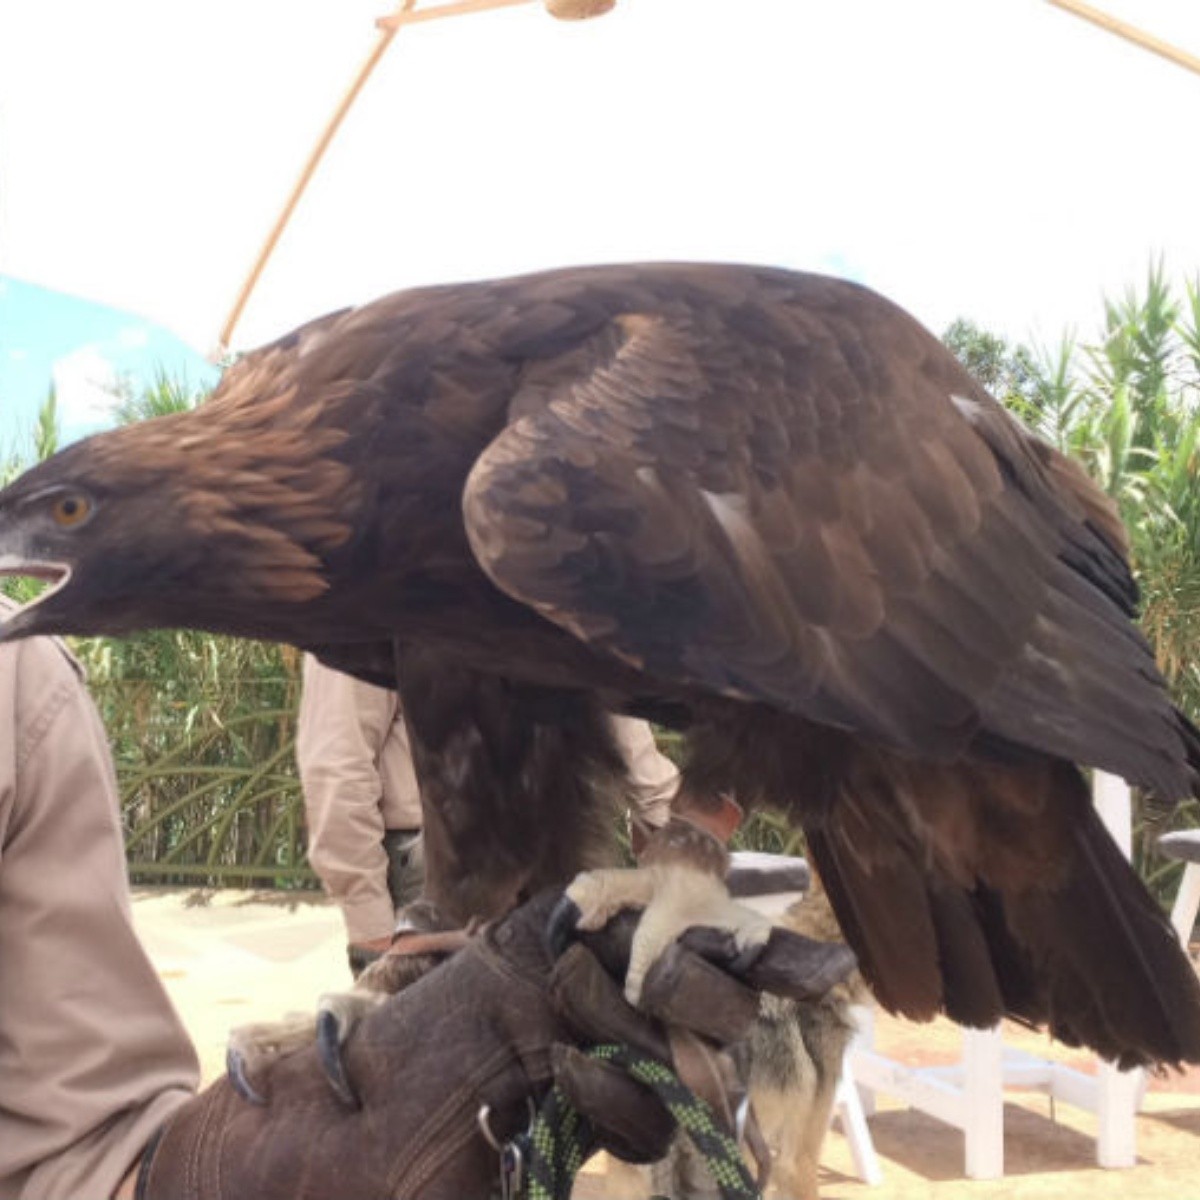 Águila real, símbolo mexicano en peligro de extinción | El Informador